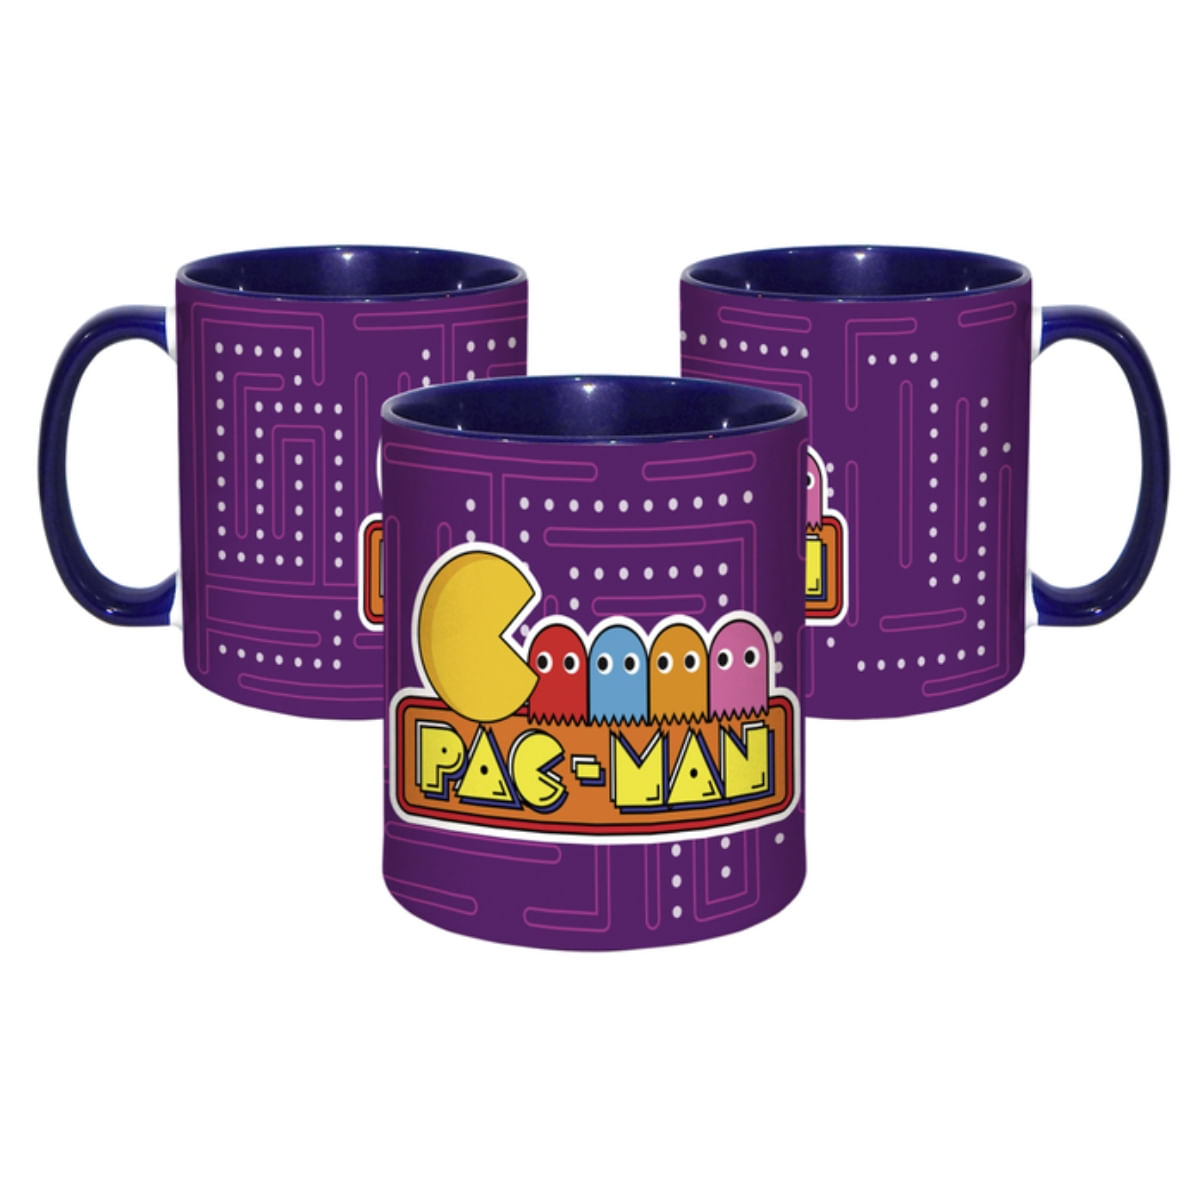 Taza Arcade Pacman 02